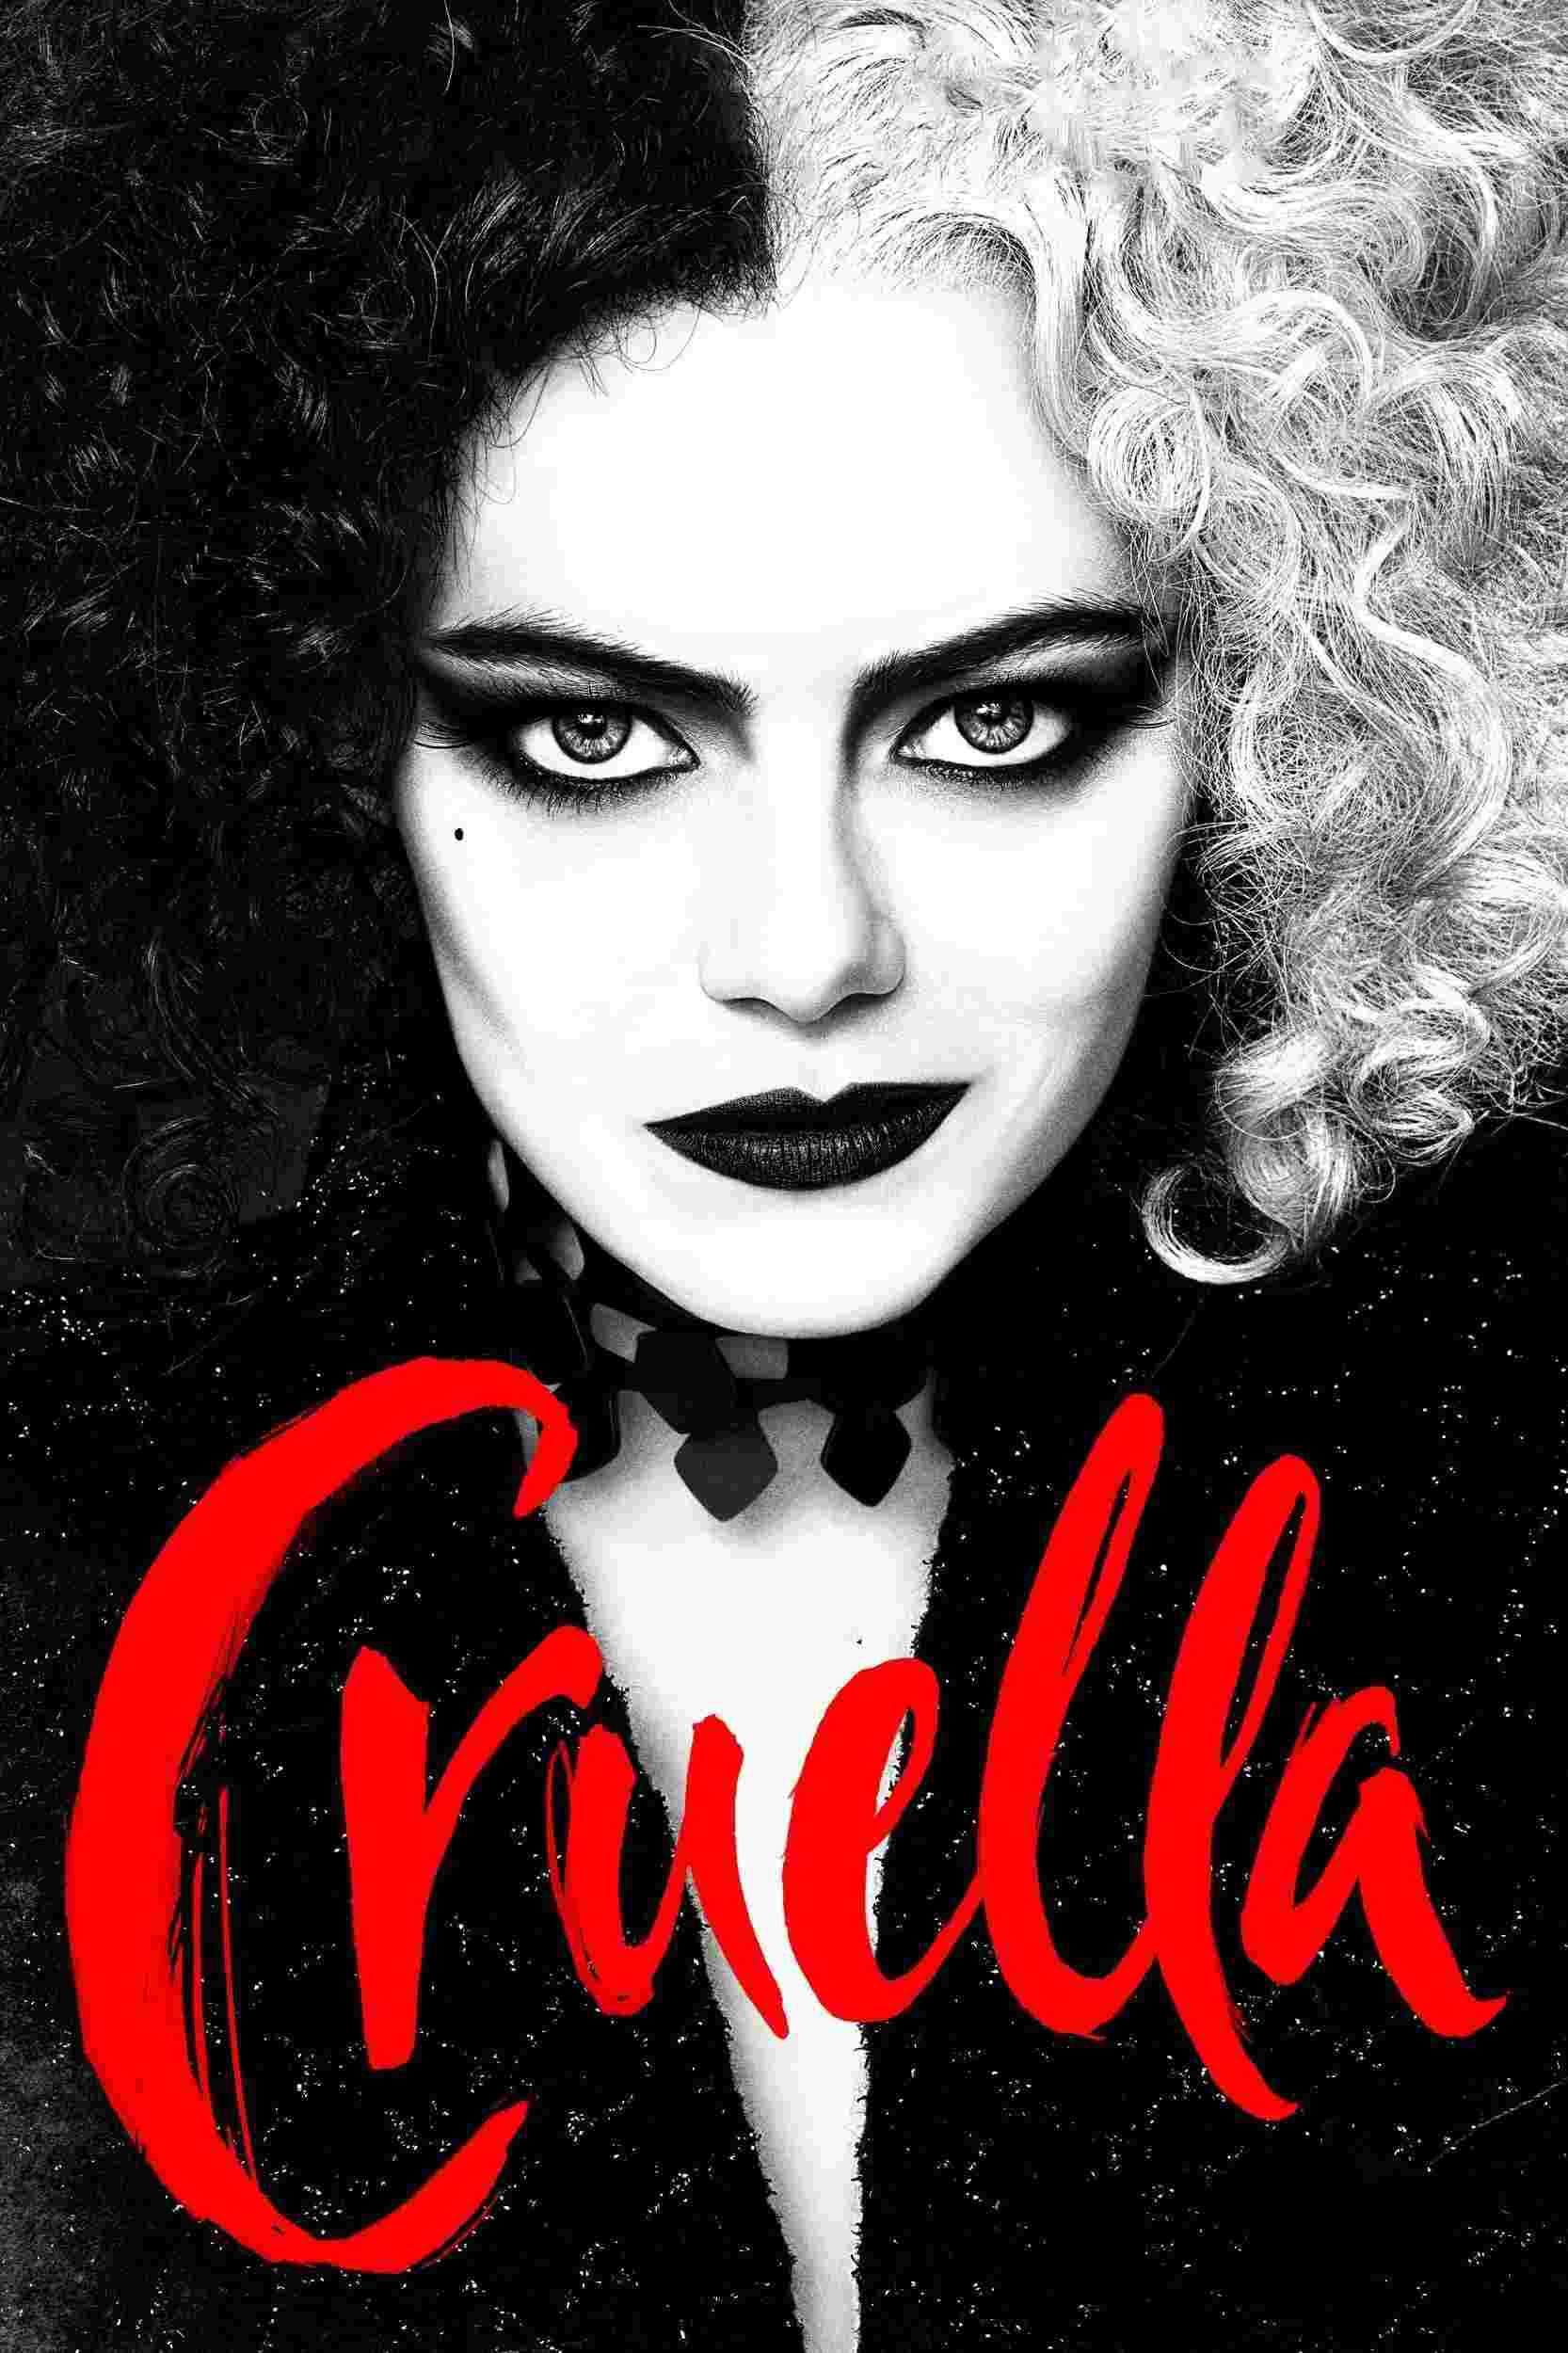 Cruella (2021) Emma Stone